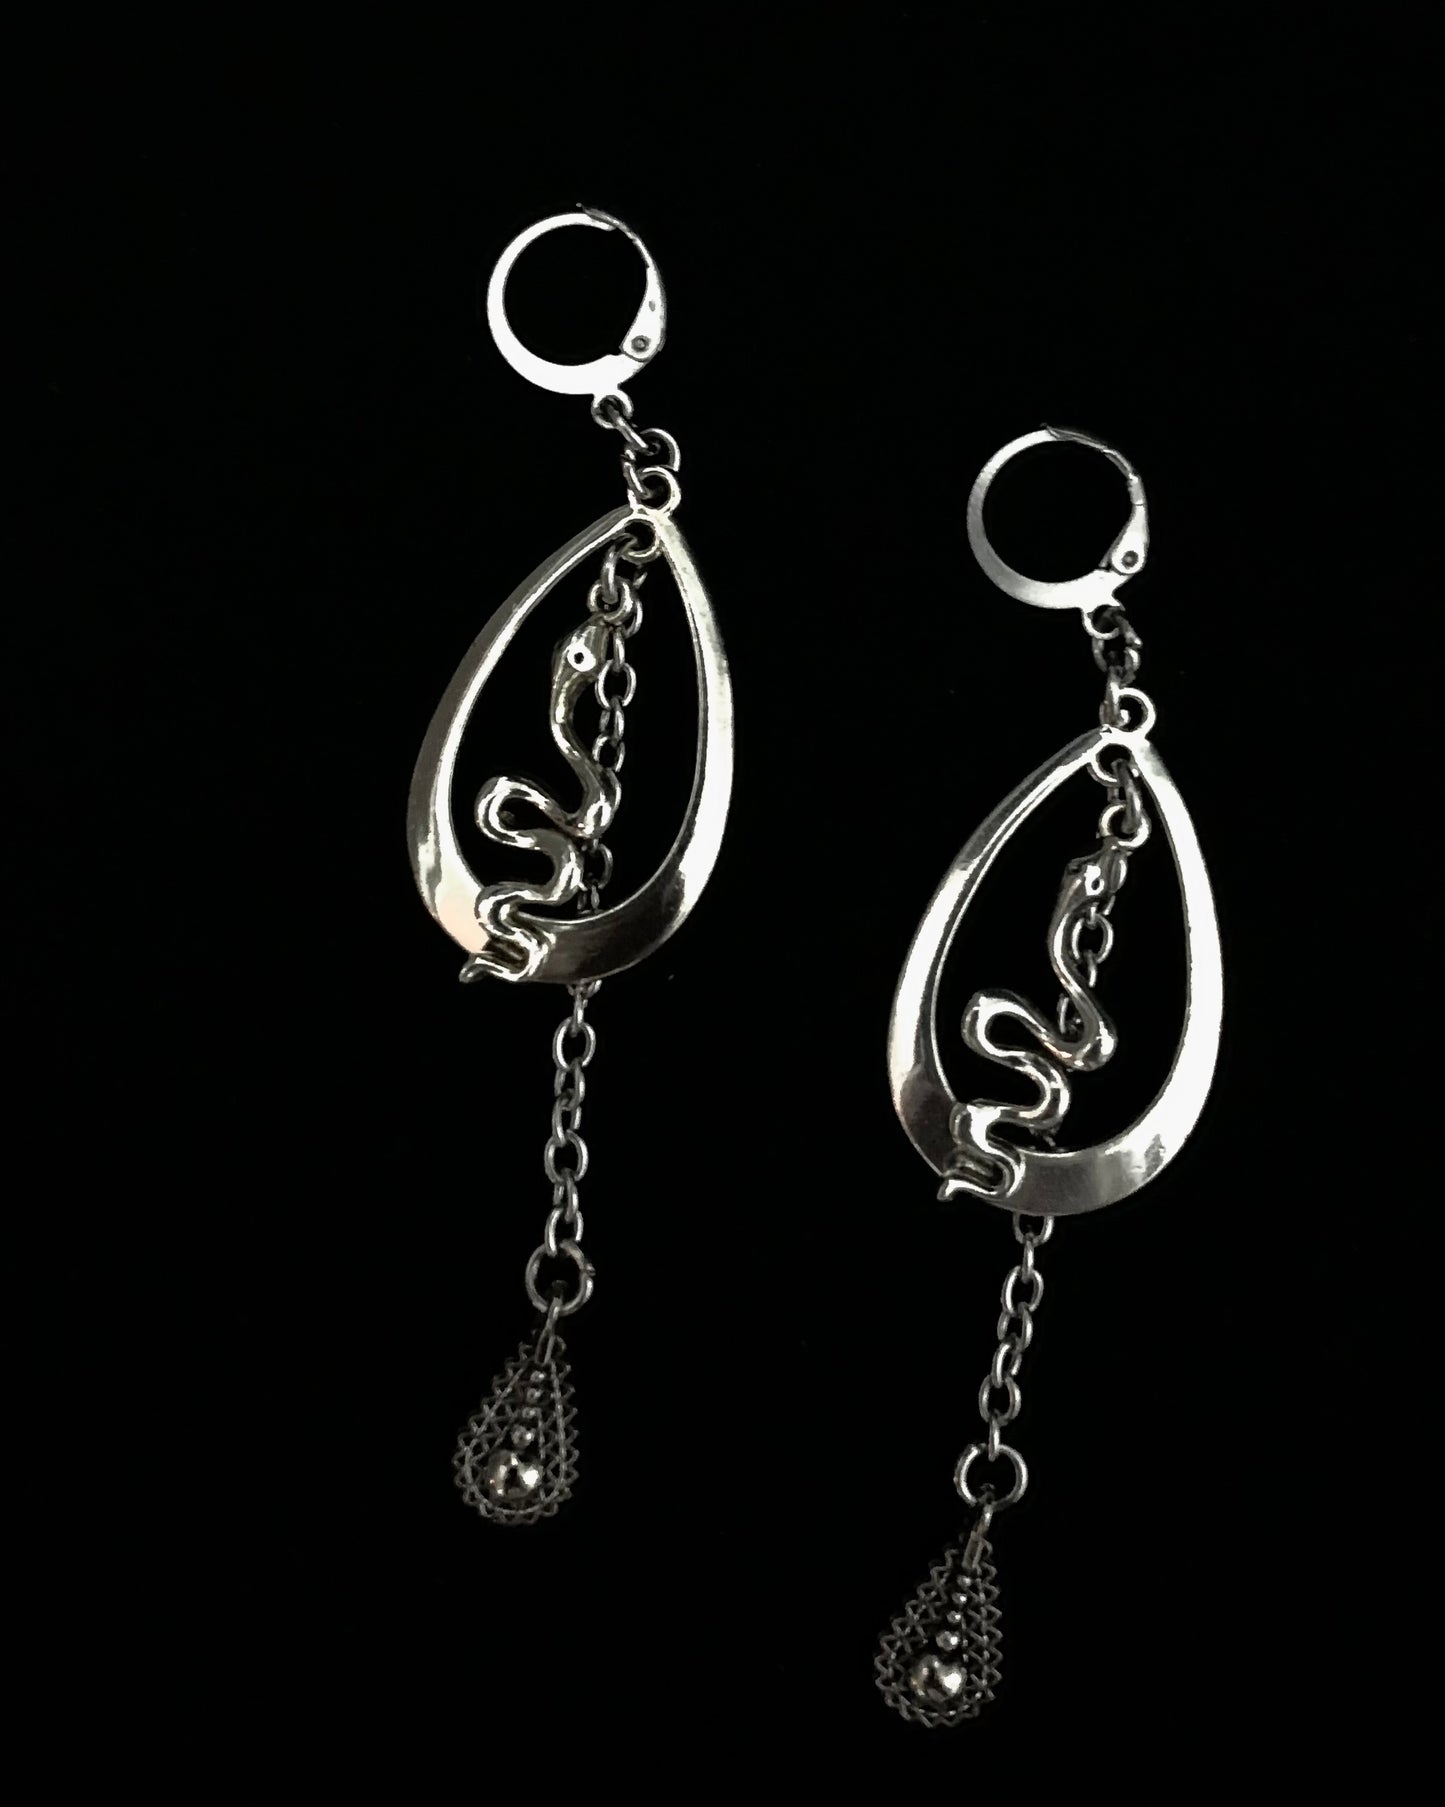 XI earrings